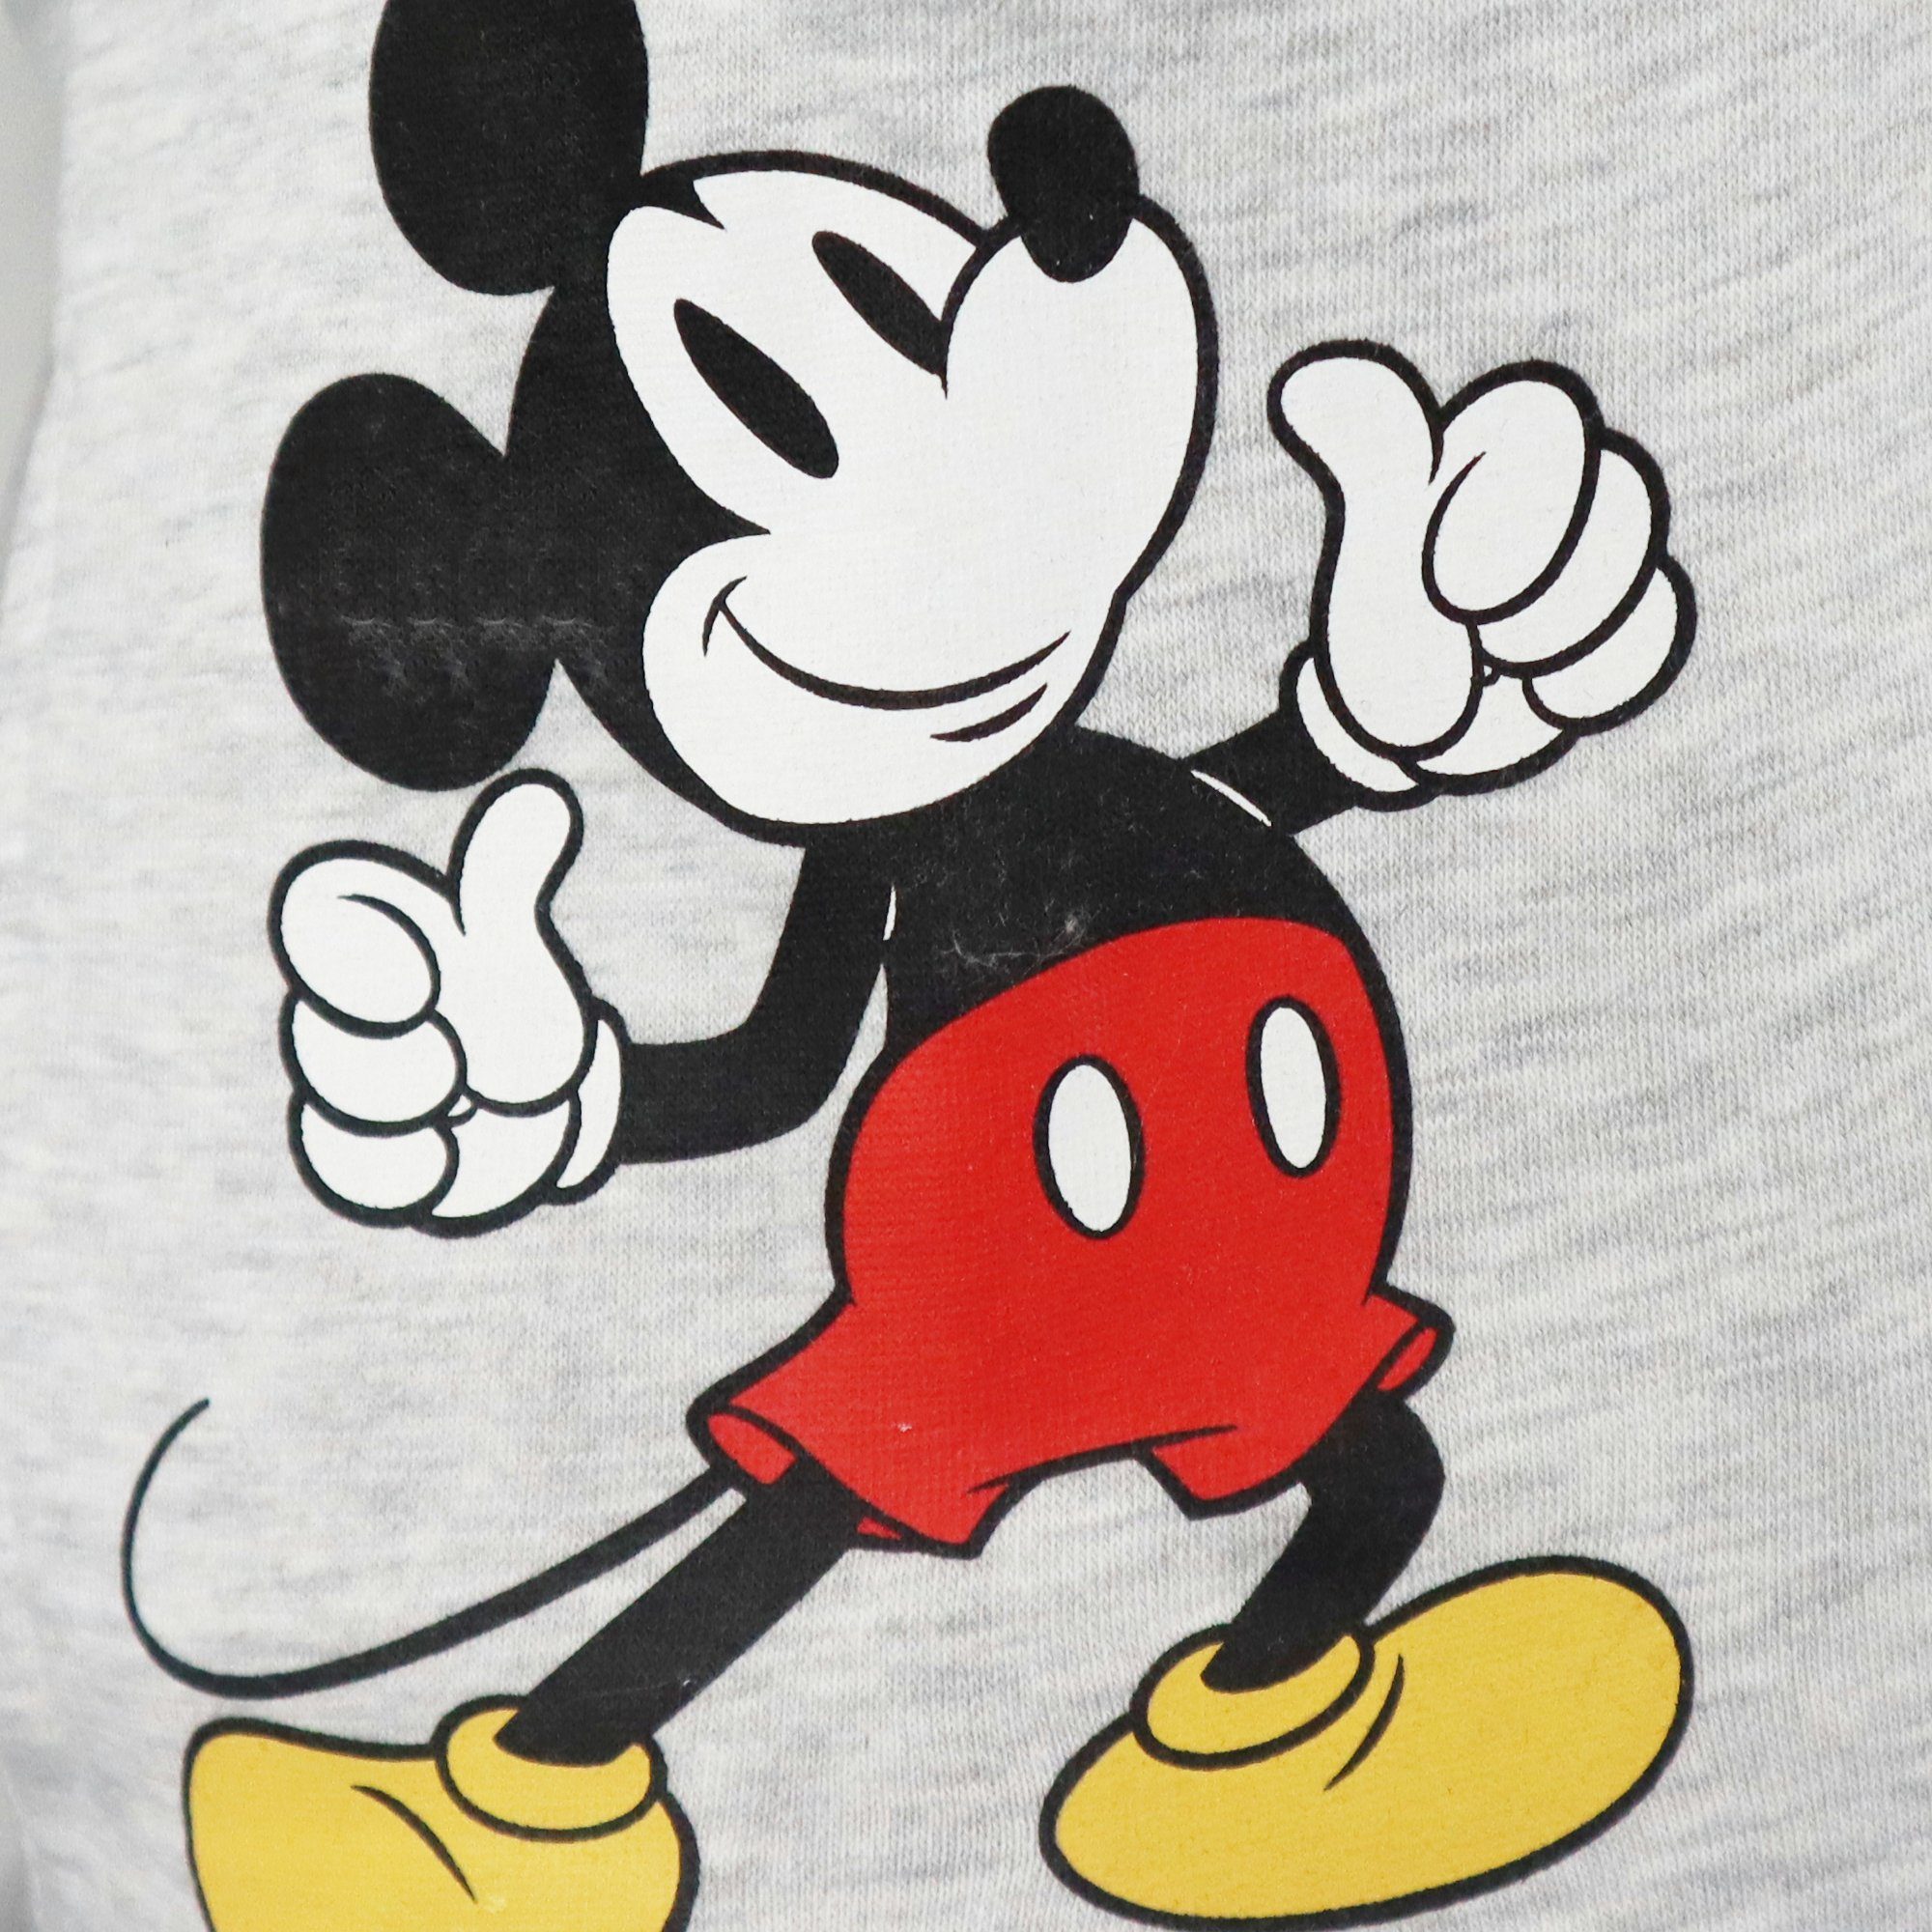 Jacke Reißverschluss Kinder Maus Kapuzenpullover Gr. bis 98 Pulli Jungen 128 Disney Disney Mickey